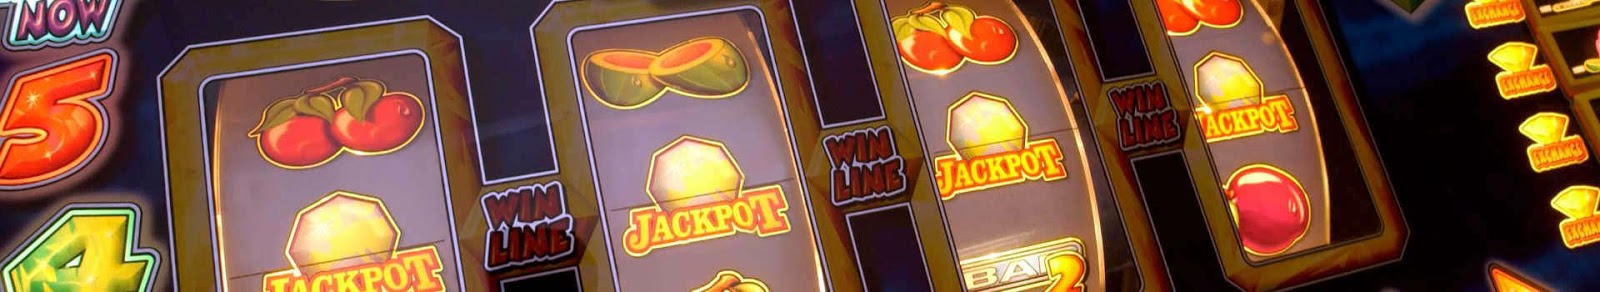 Top Slots App Gambling